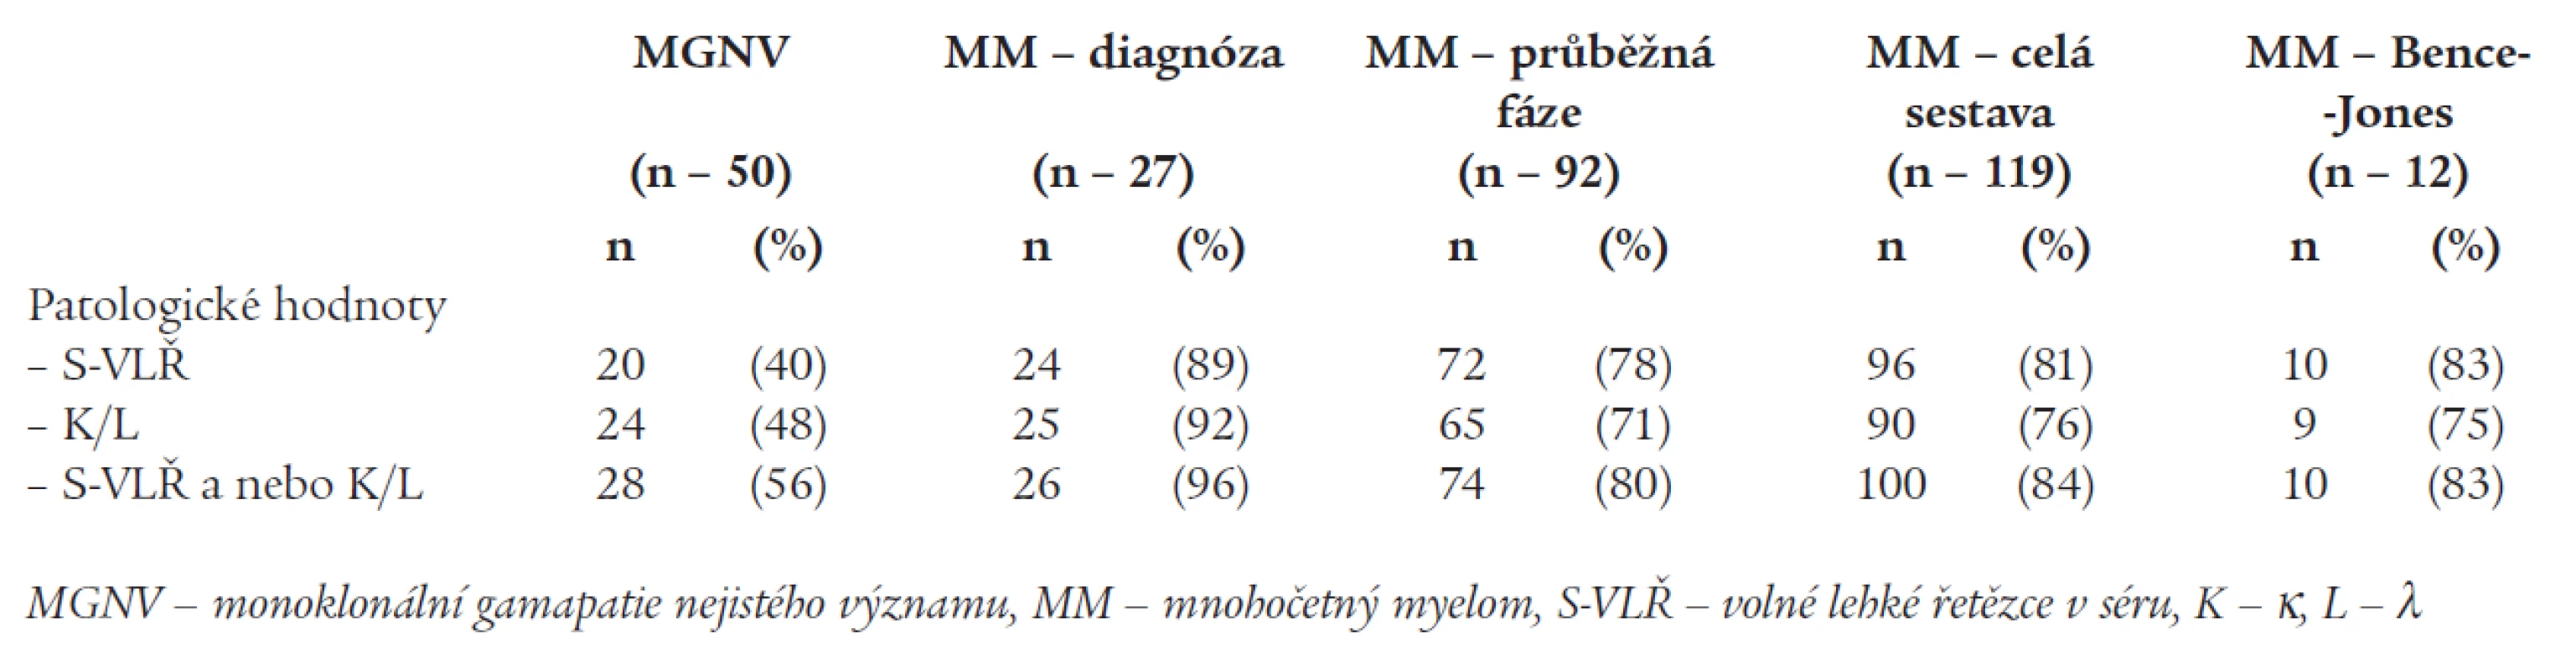 Srovnání výskytu abnormálních hladin S-VLŘ, indexu κ/λ a současné patologie obou ukazatelů u nemocných s mnohočetným myelomem a monoklonální gamapatie nejistého významu.